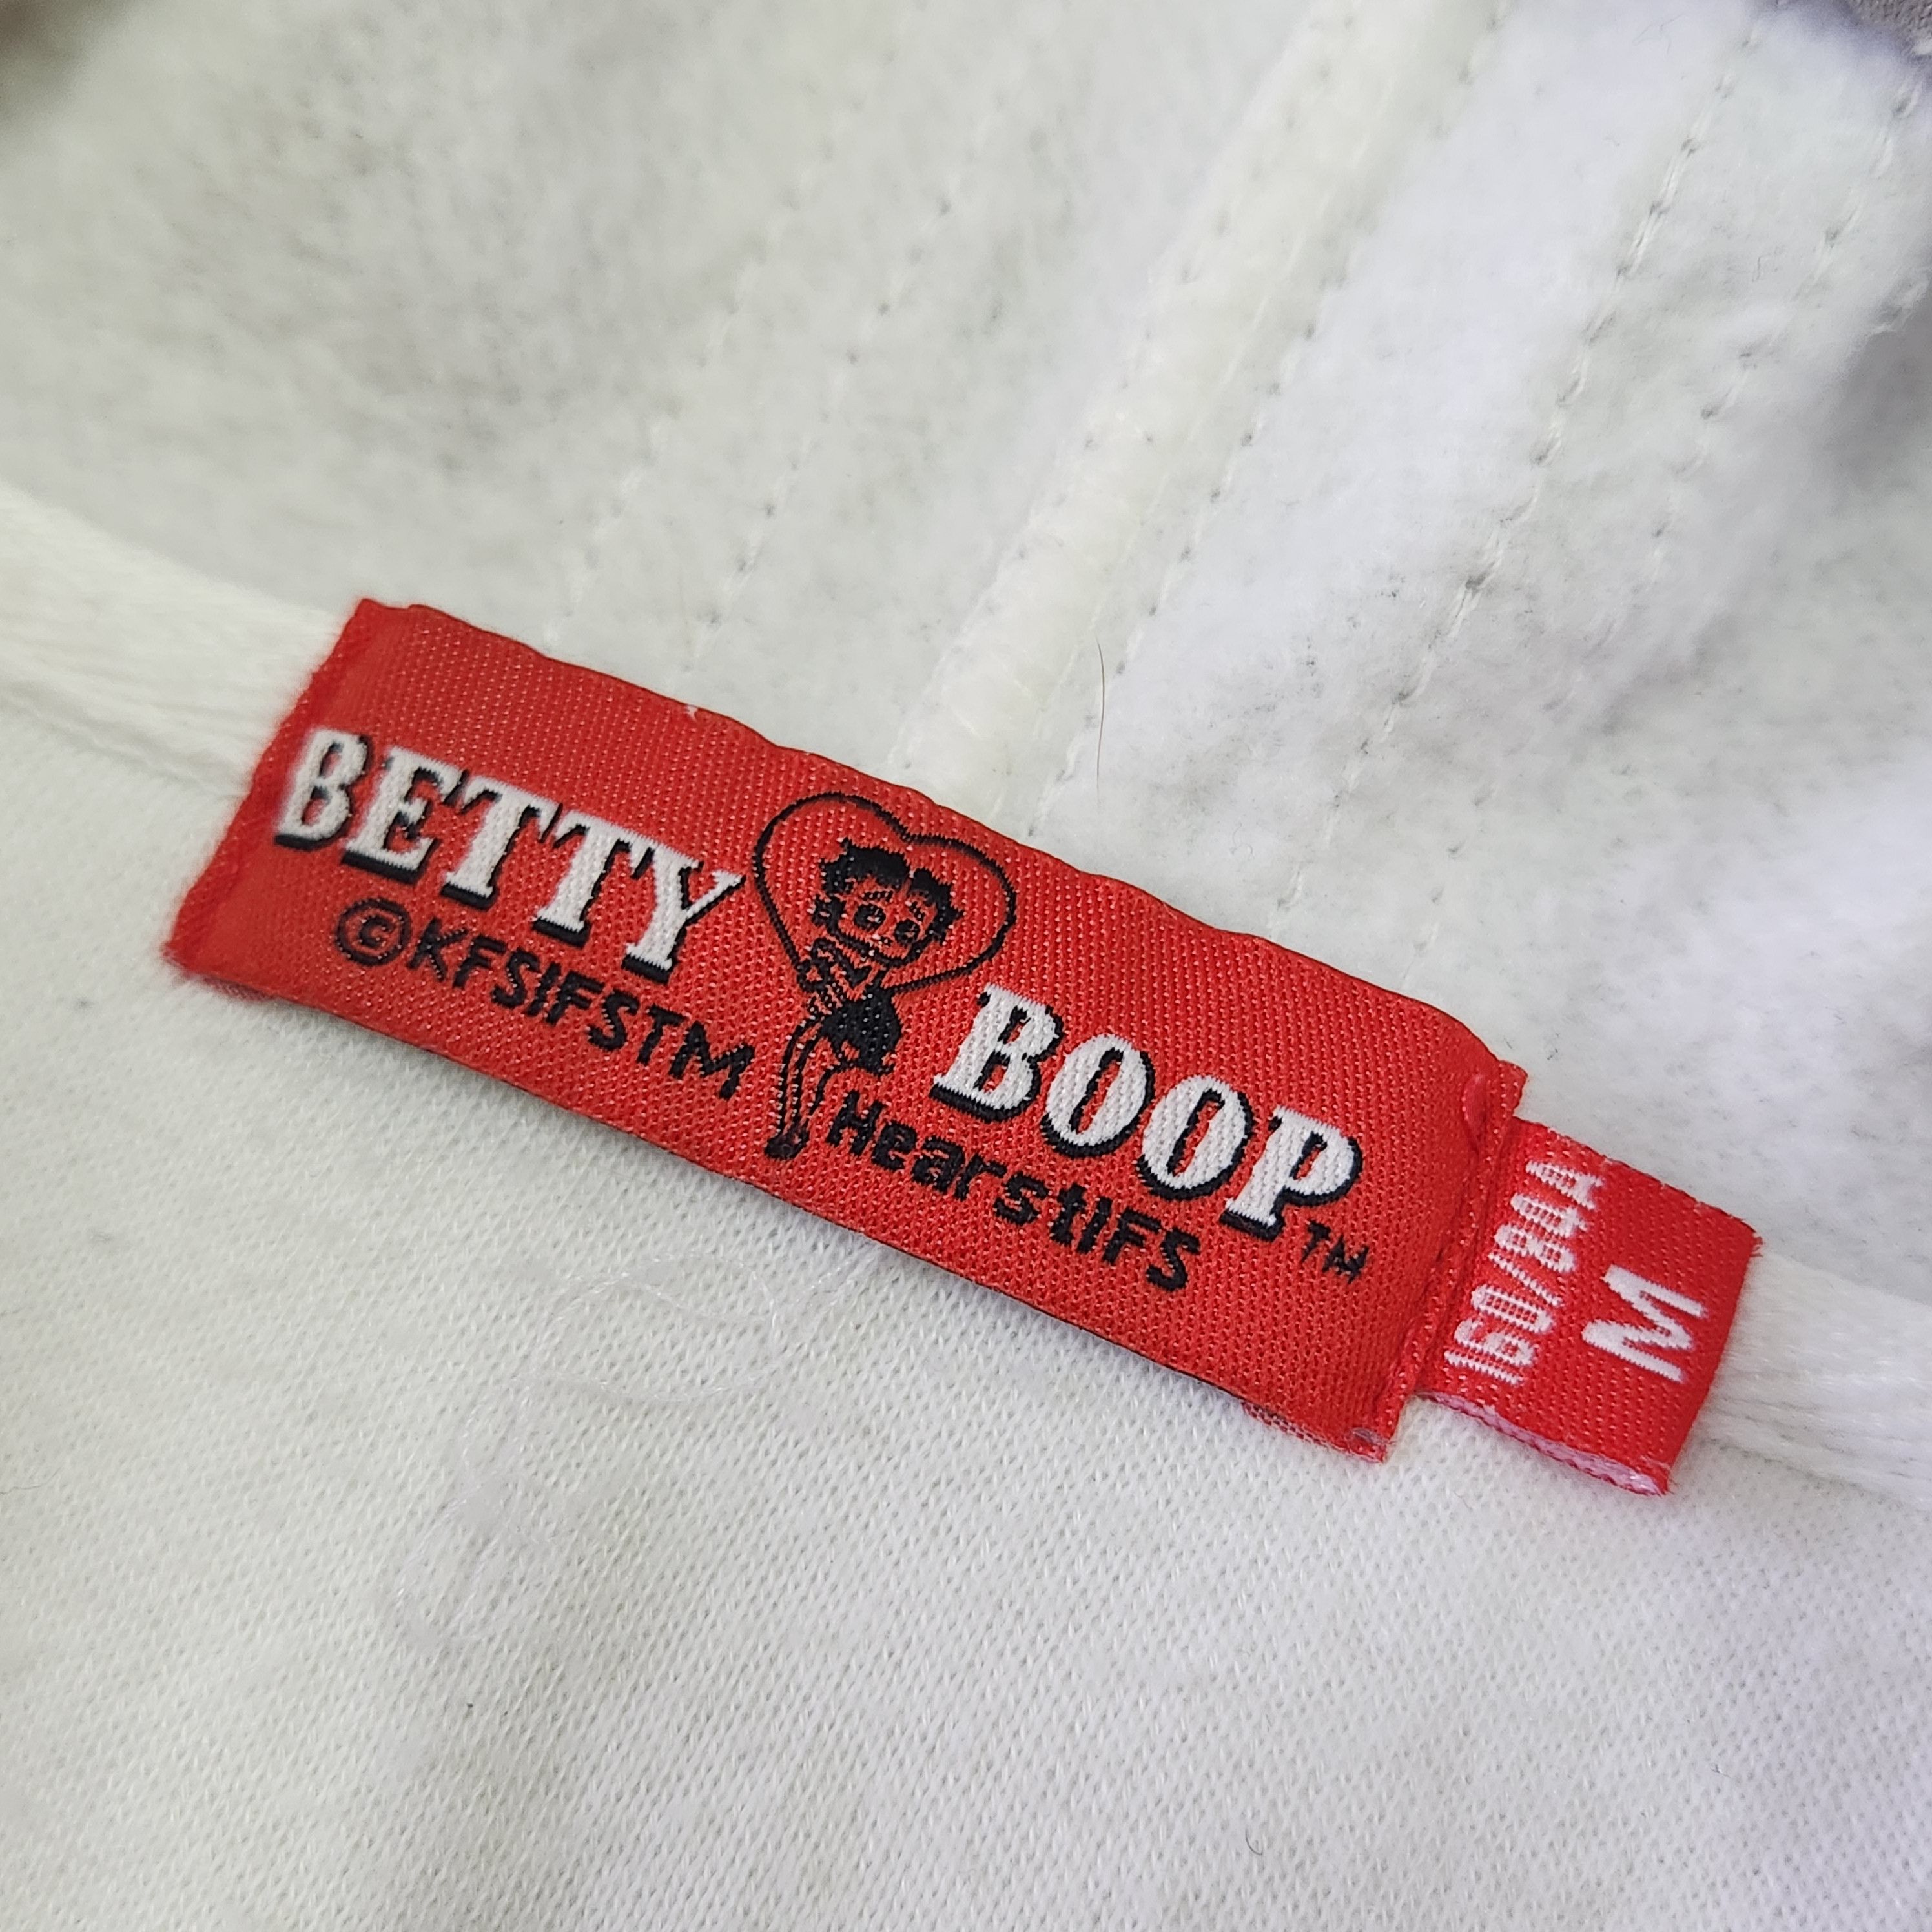 Japanese Brand - Betty Boop Rock & Roll Hoodie - 13